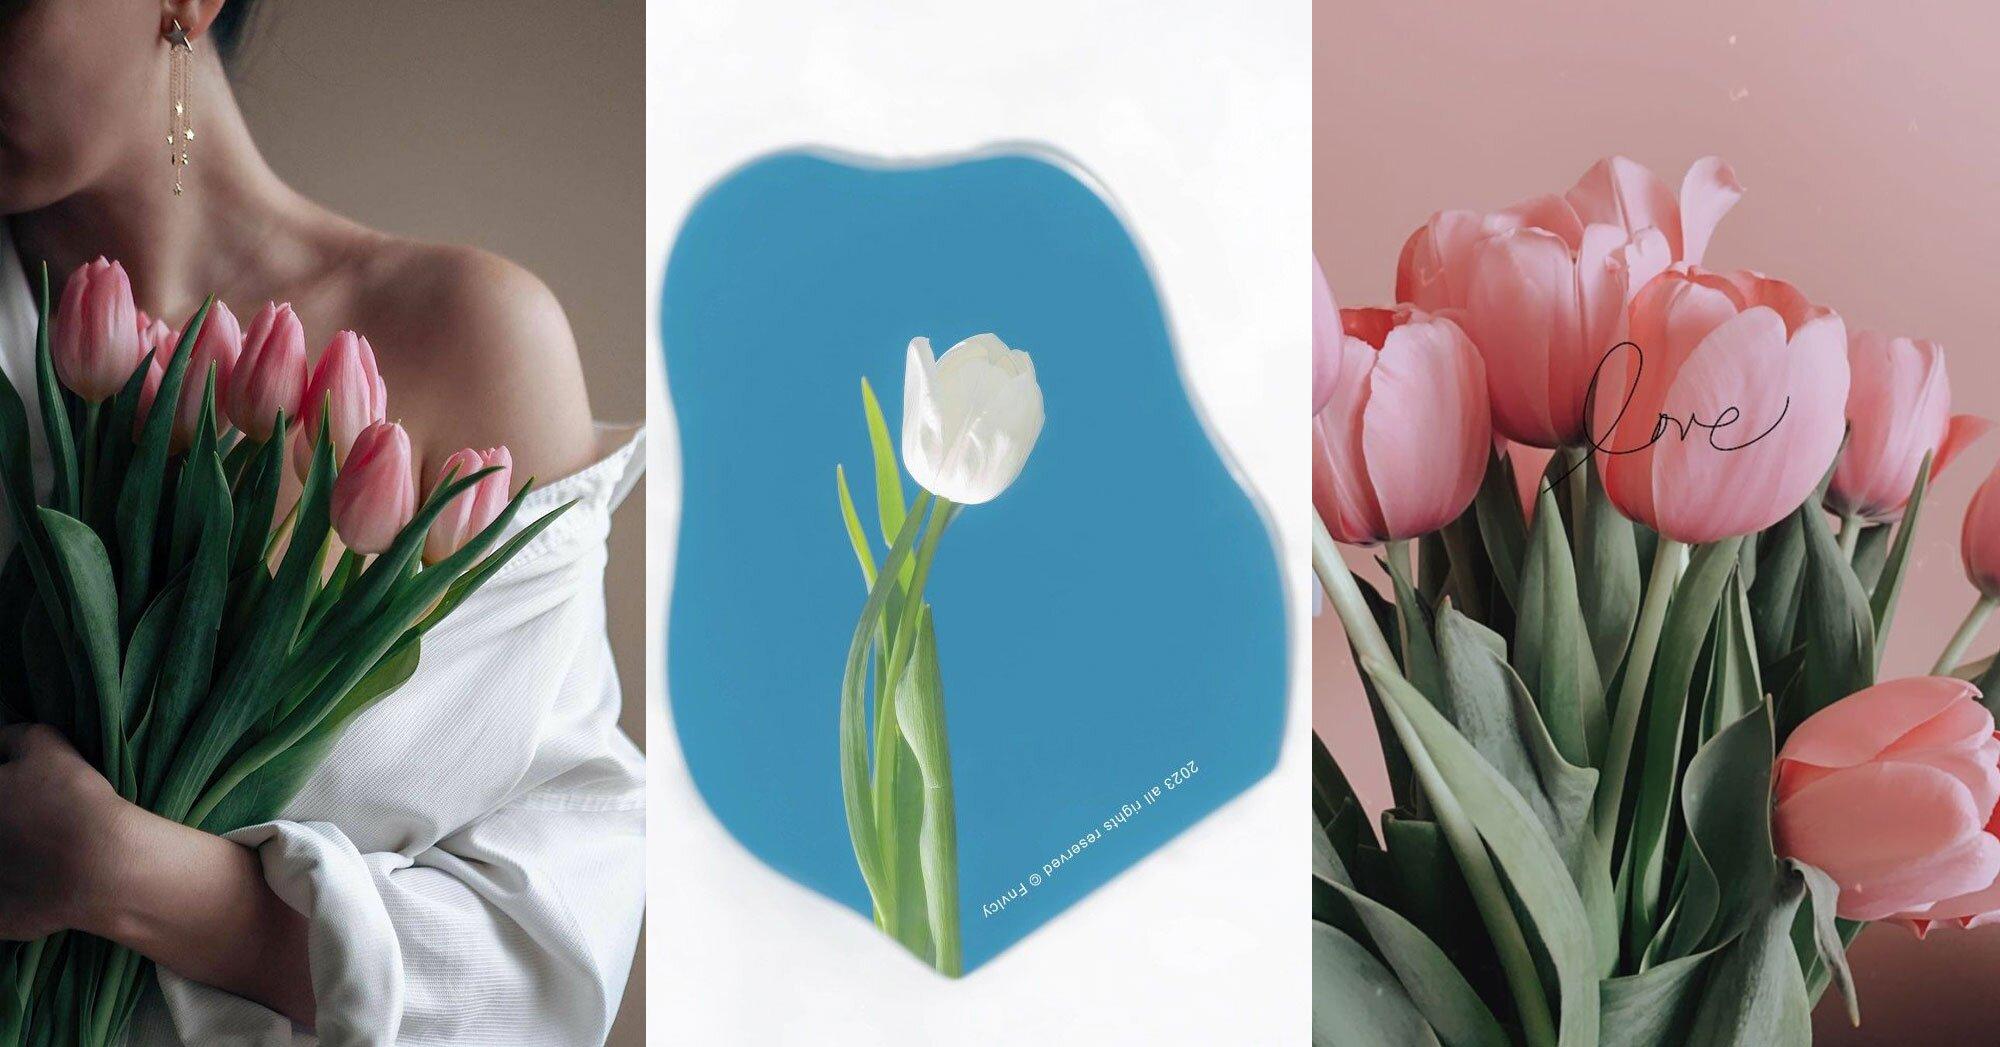 Tổng hợp hình ảnh hoa Tulip đẹp nhất - Ảnh đẹp hoa Tulip